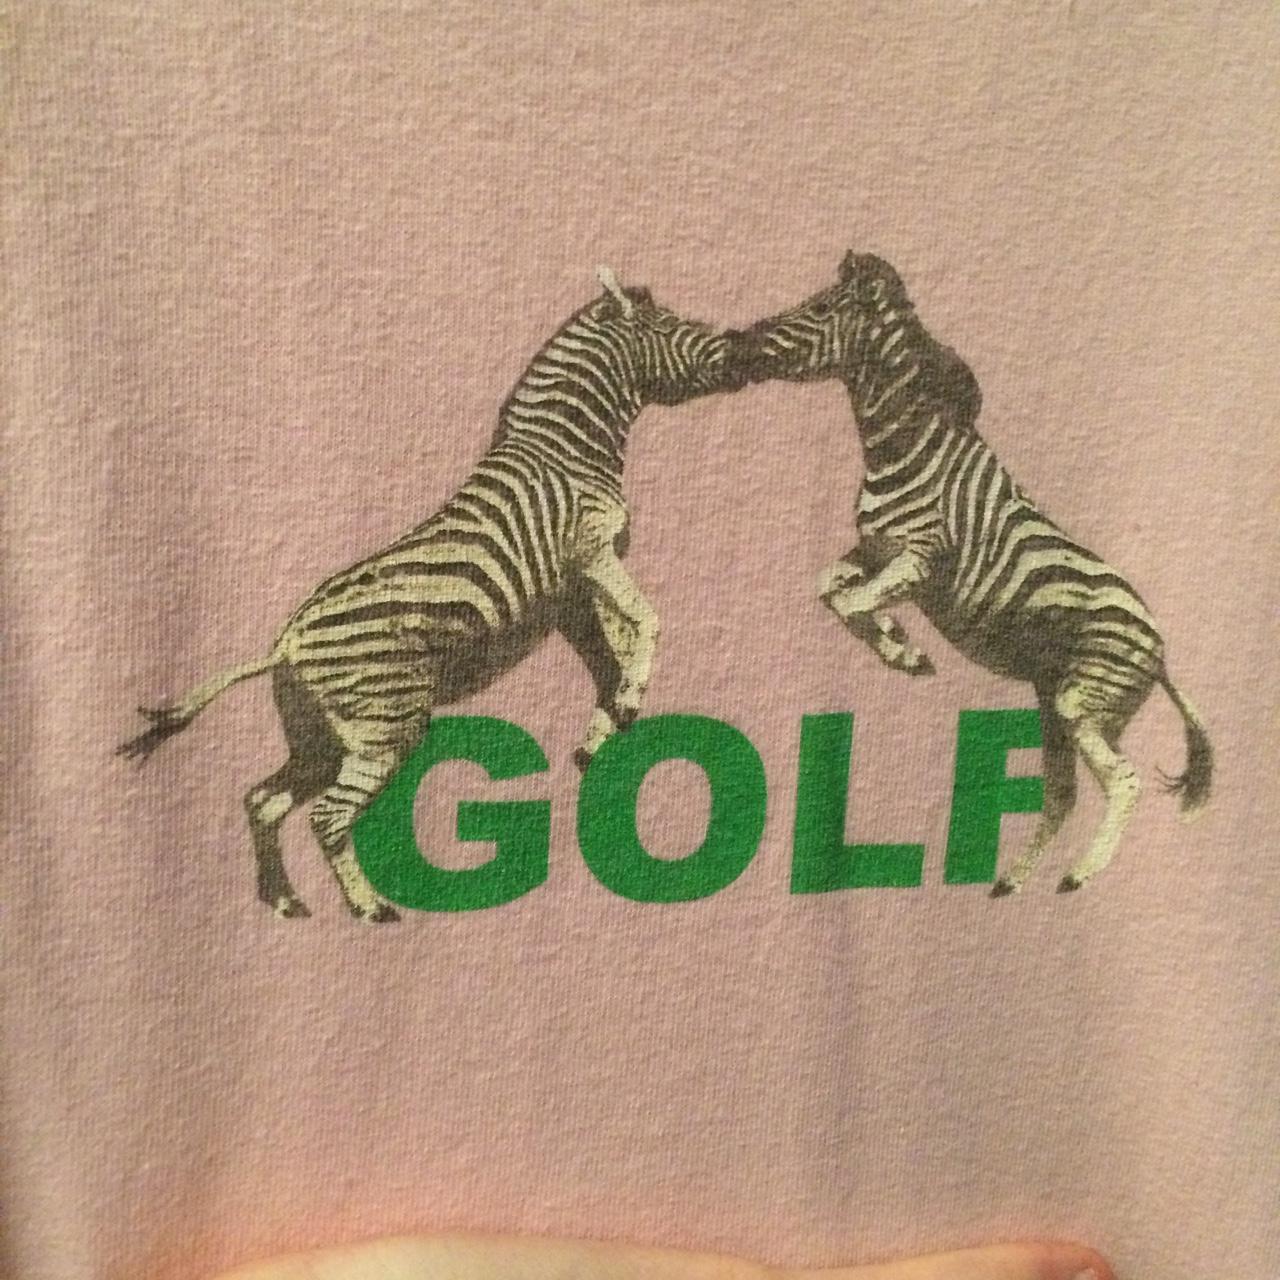 Golf Wang pink zebra t-shirt designed by Tyler, the... - Depop